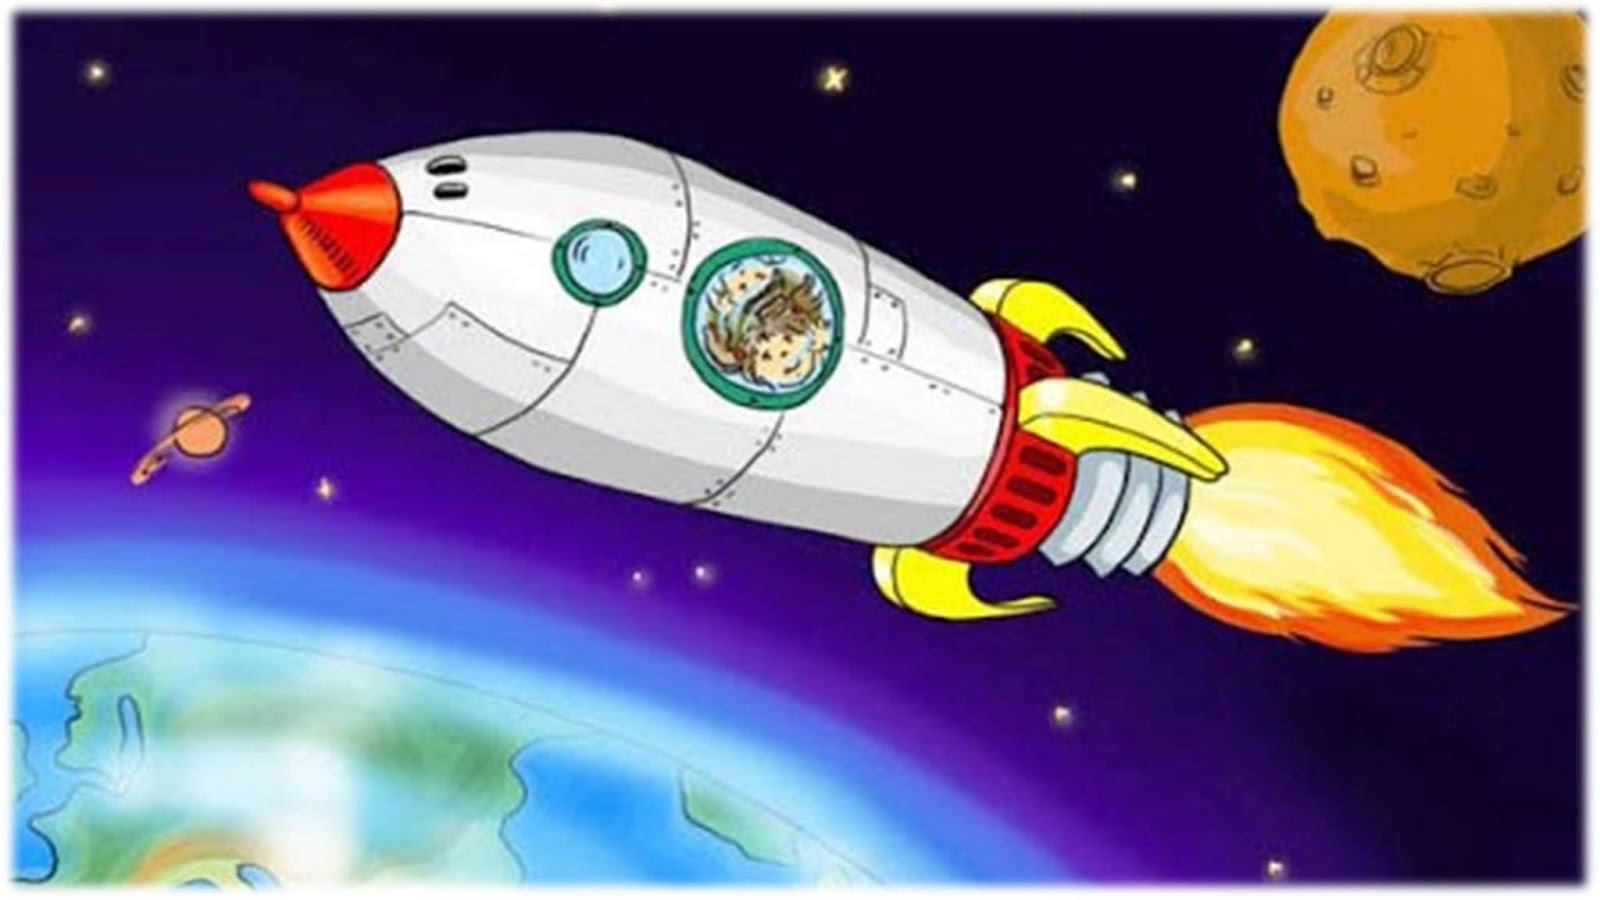 Картинки ракеты для детей дошкольного возраста. Космическая ракета для детей. Космос для дошкольников. Космос для детей дошкольного возраста. Космический корабль детский.